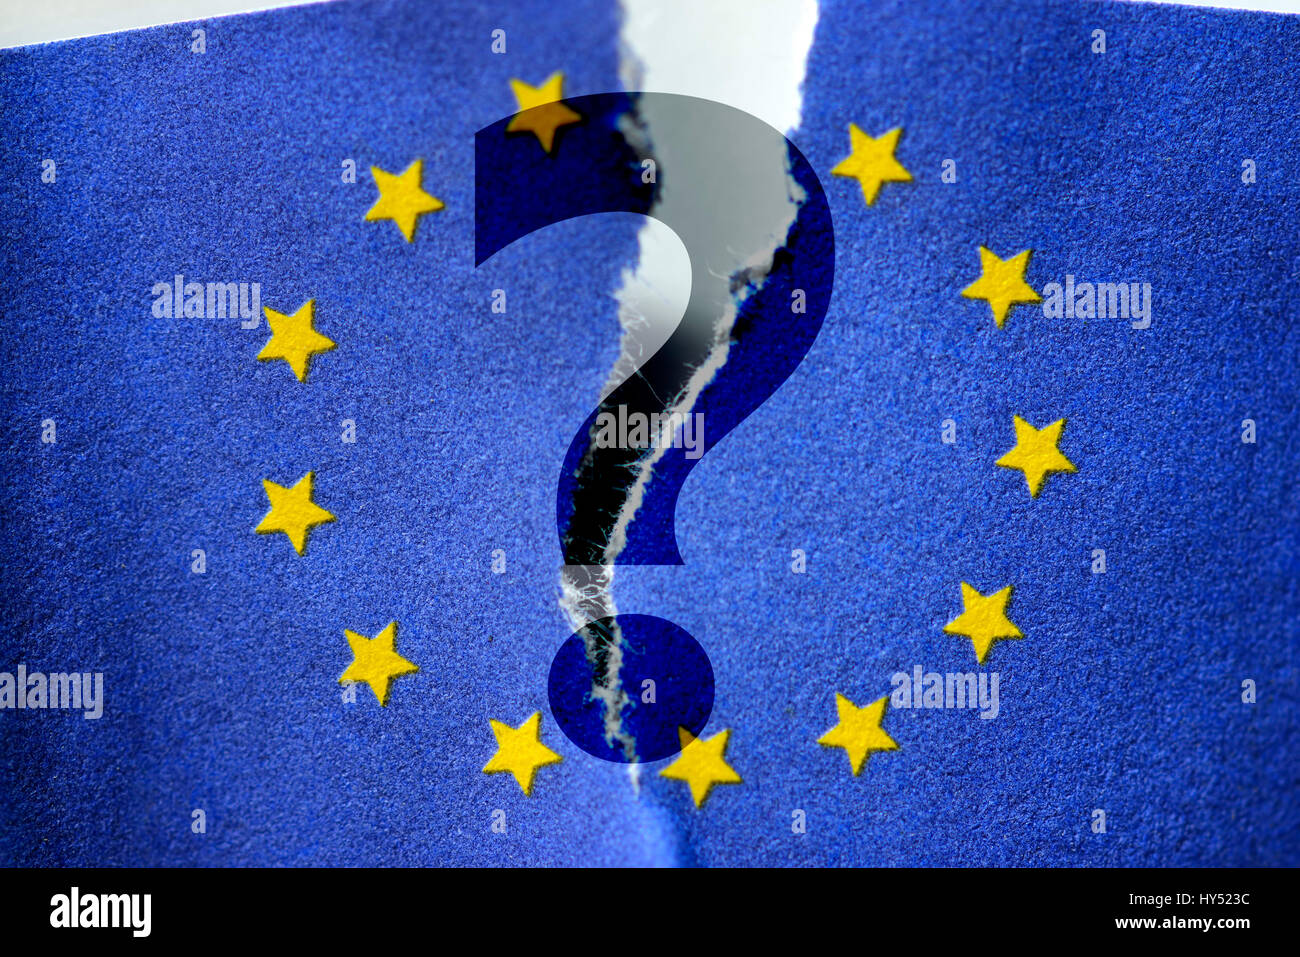 Torn European flag with question mark, decay of Europe, Zerrissene Europafahne mit Fragezeichen, Zerfall von Europa Stock Photo